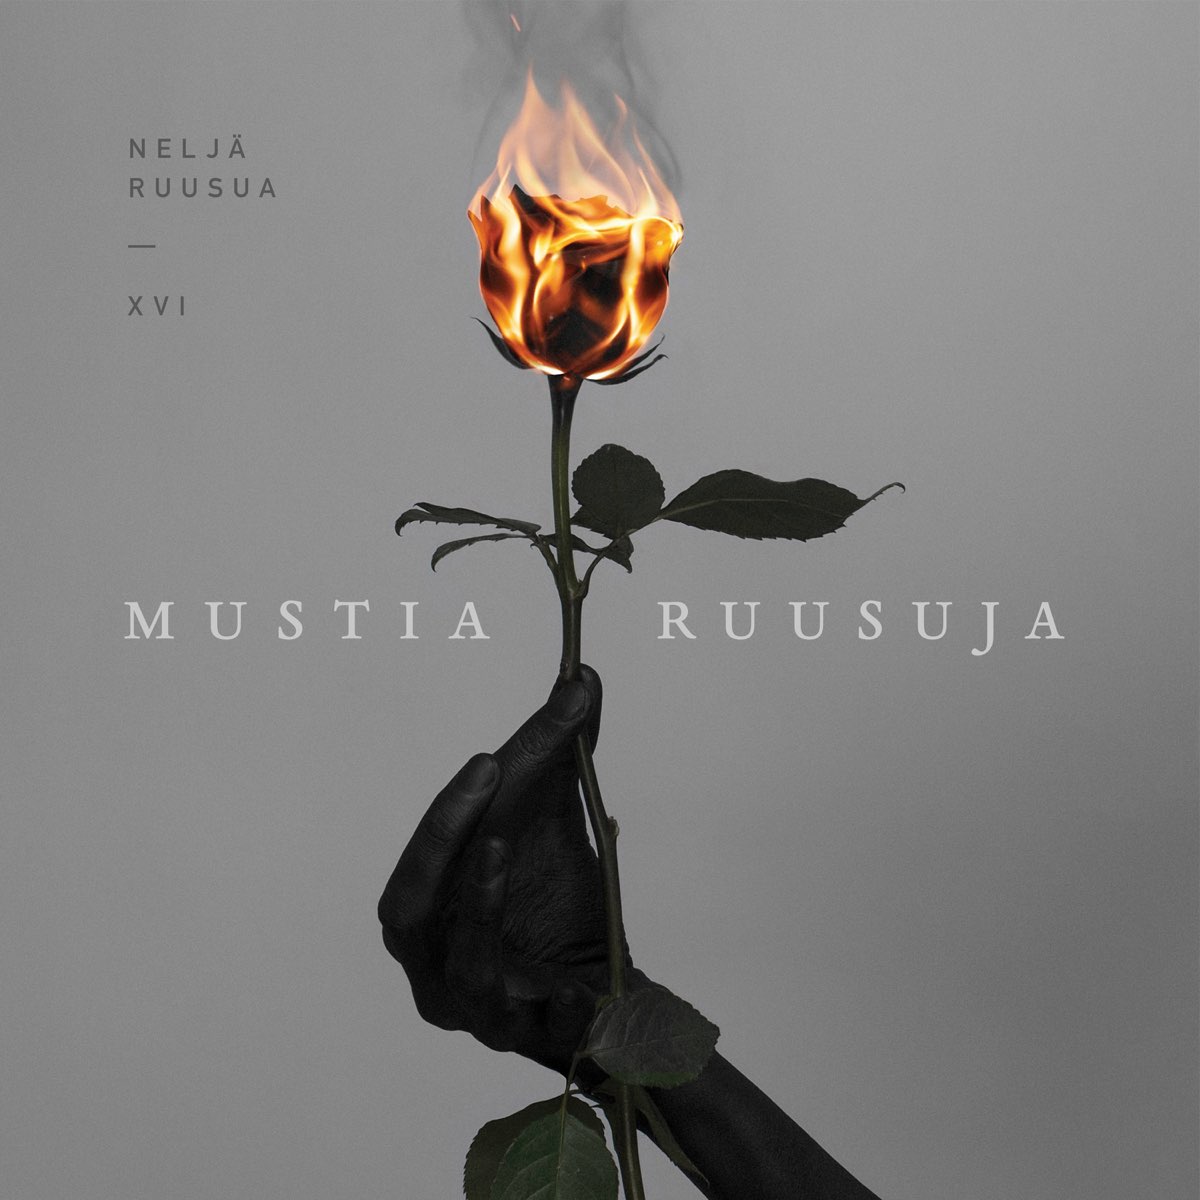 ‎Mustia ruusuja - Album by Neljä Ruusua - Apple Music